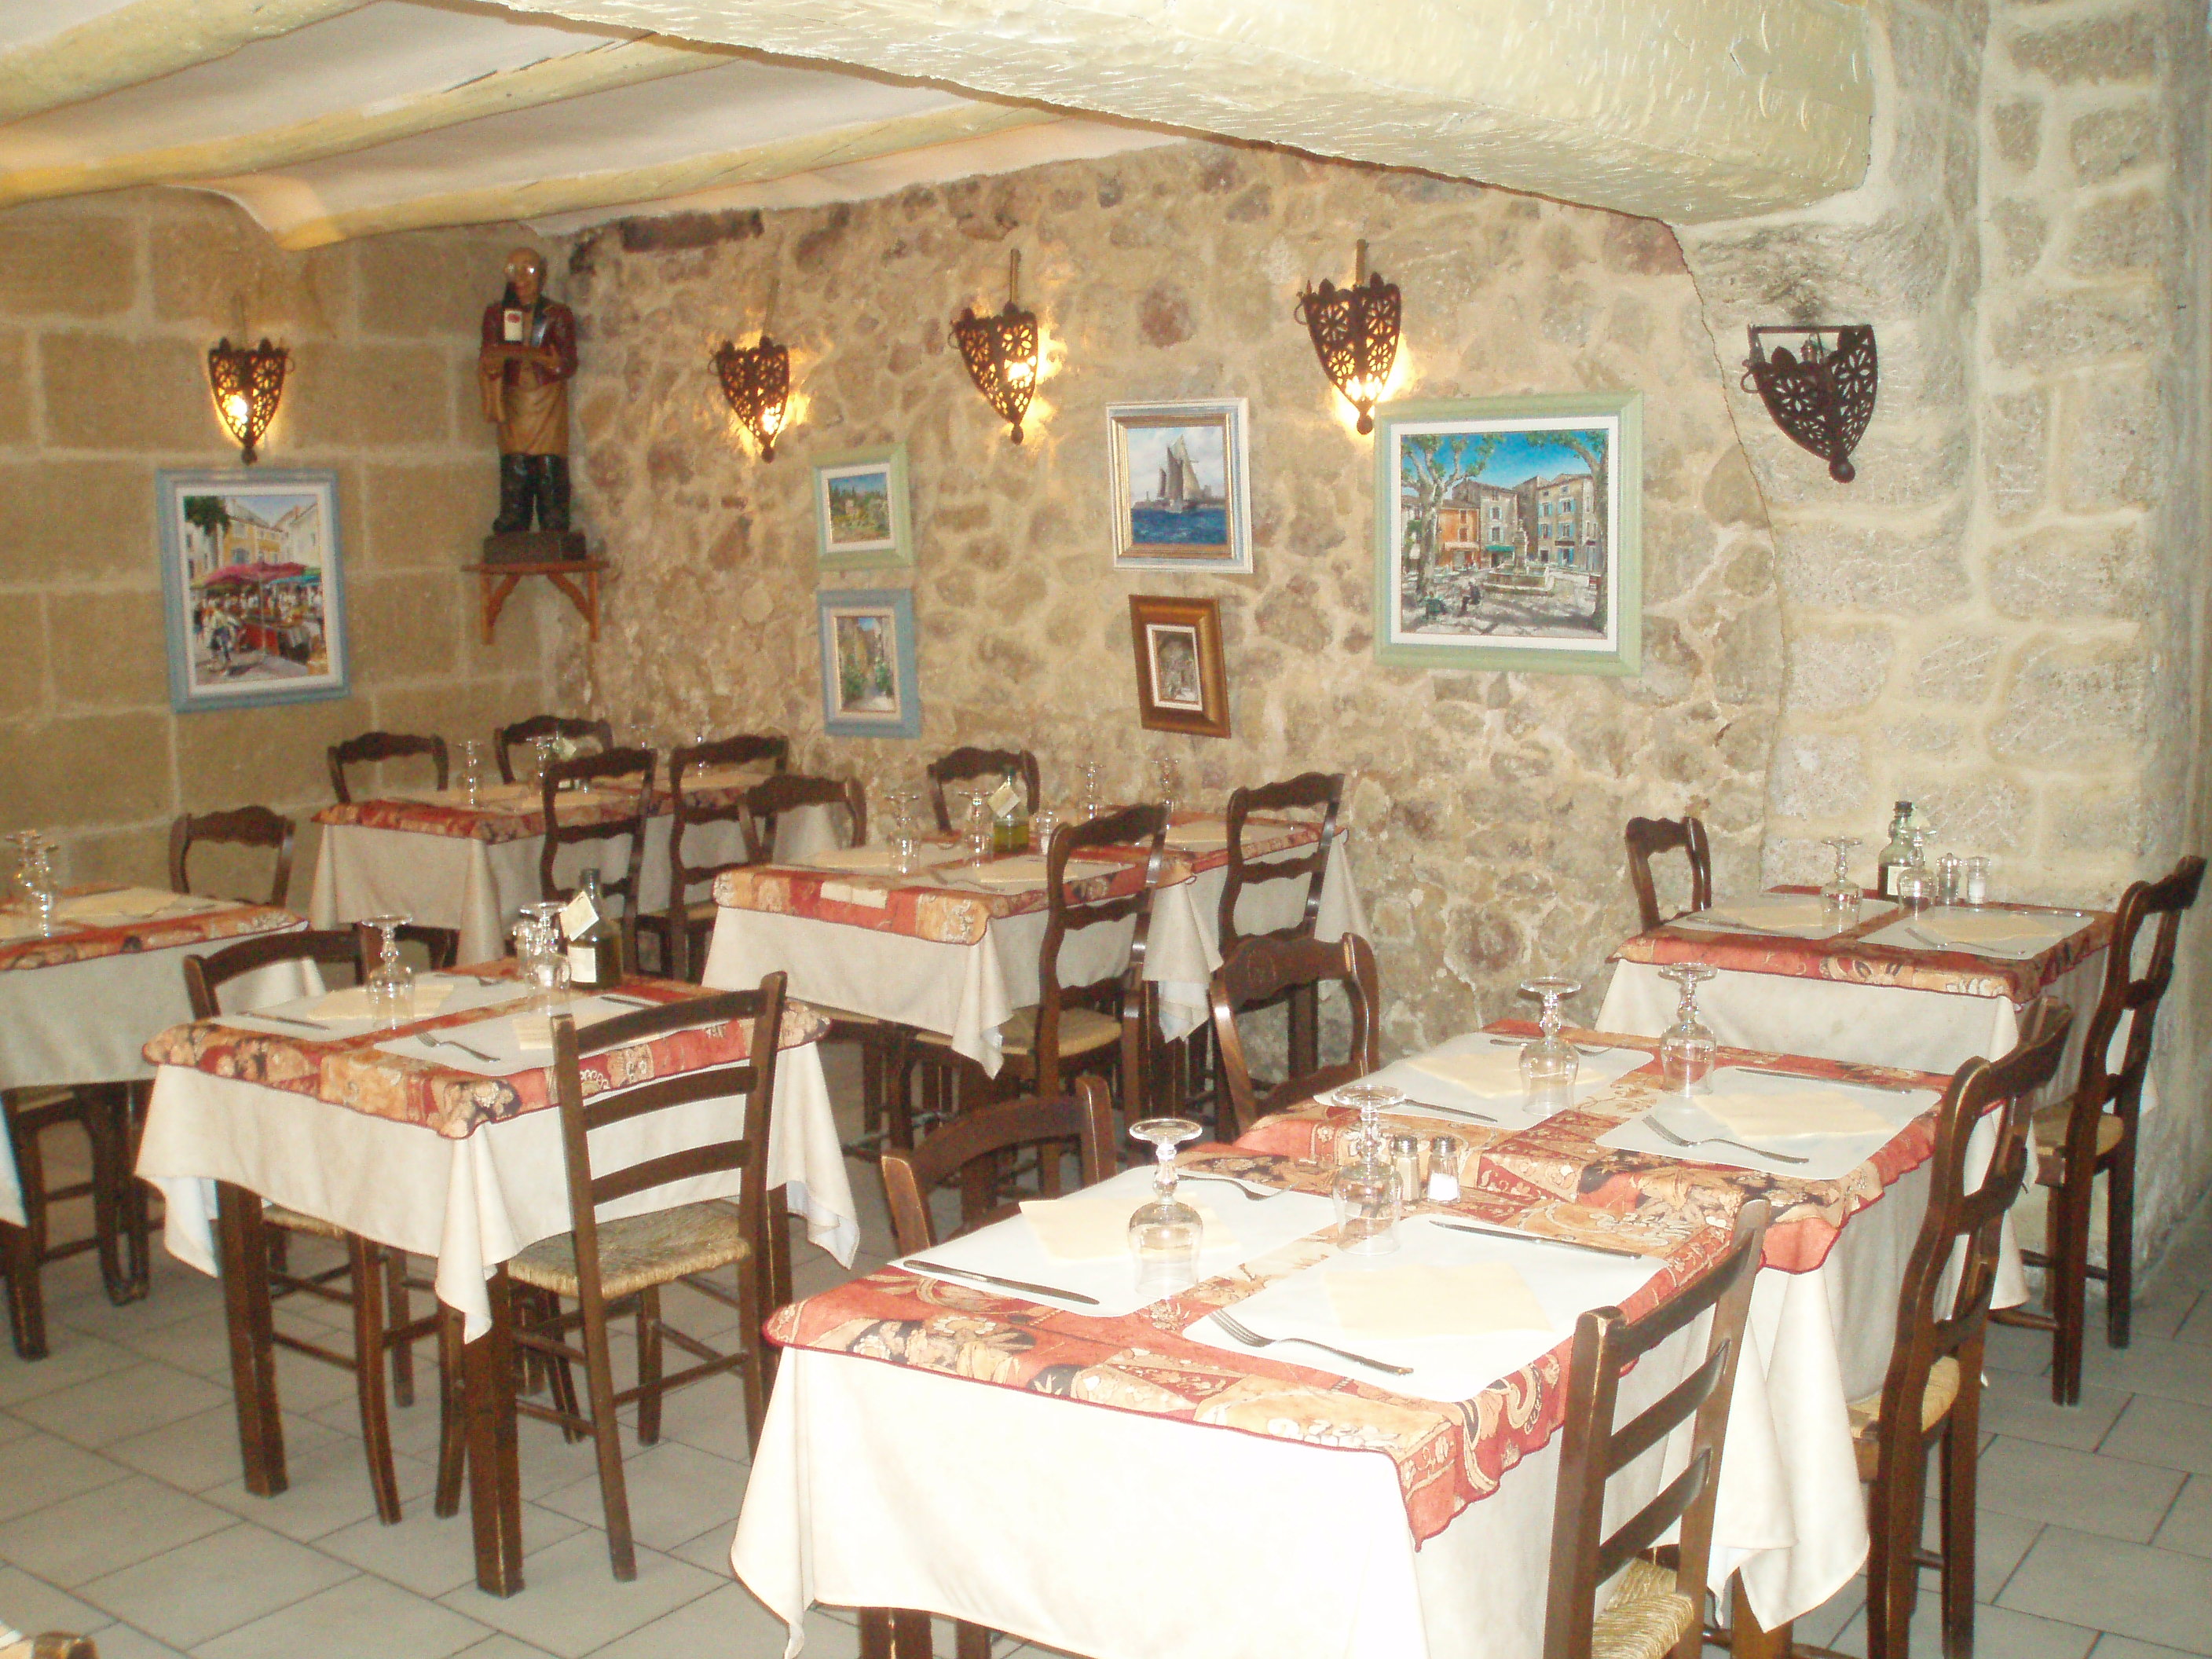 La Taverne  France Provence-Alpes-Côte d'Azur Bouches-du-Rhône Pélissanne 13330